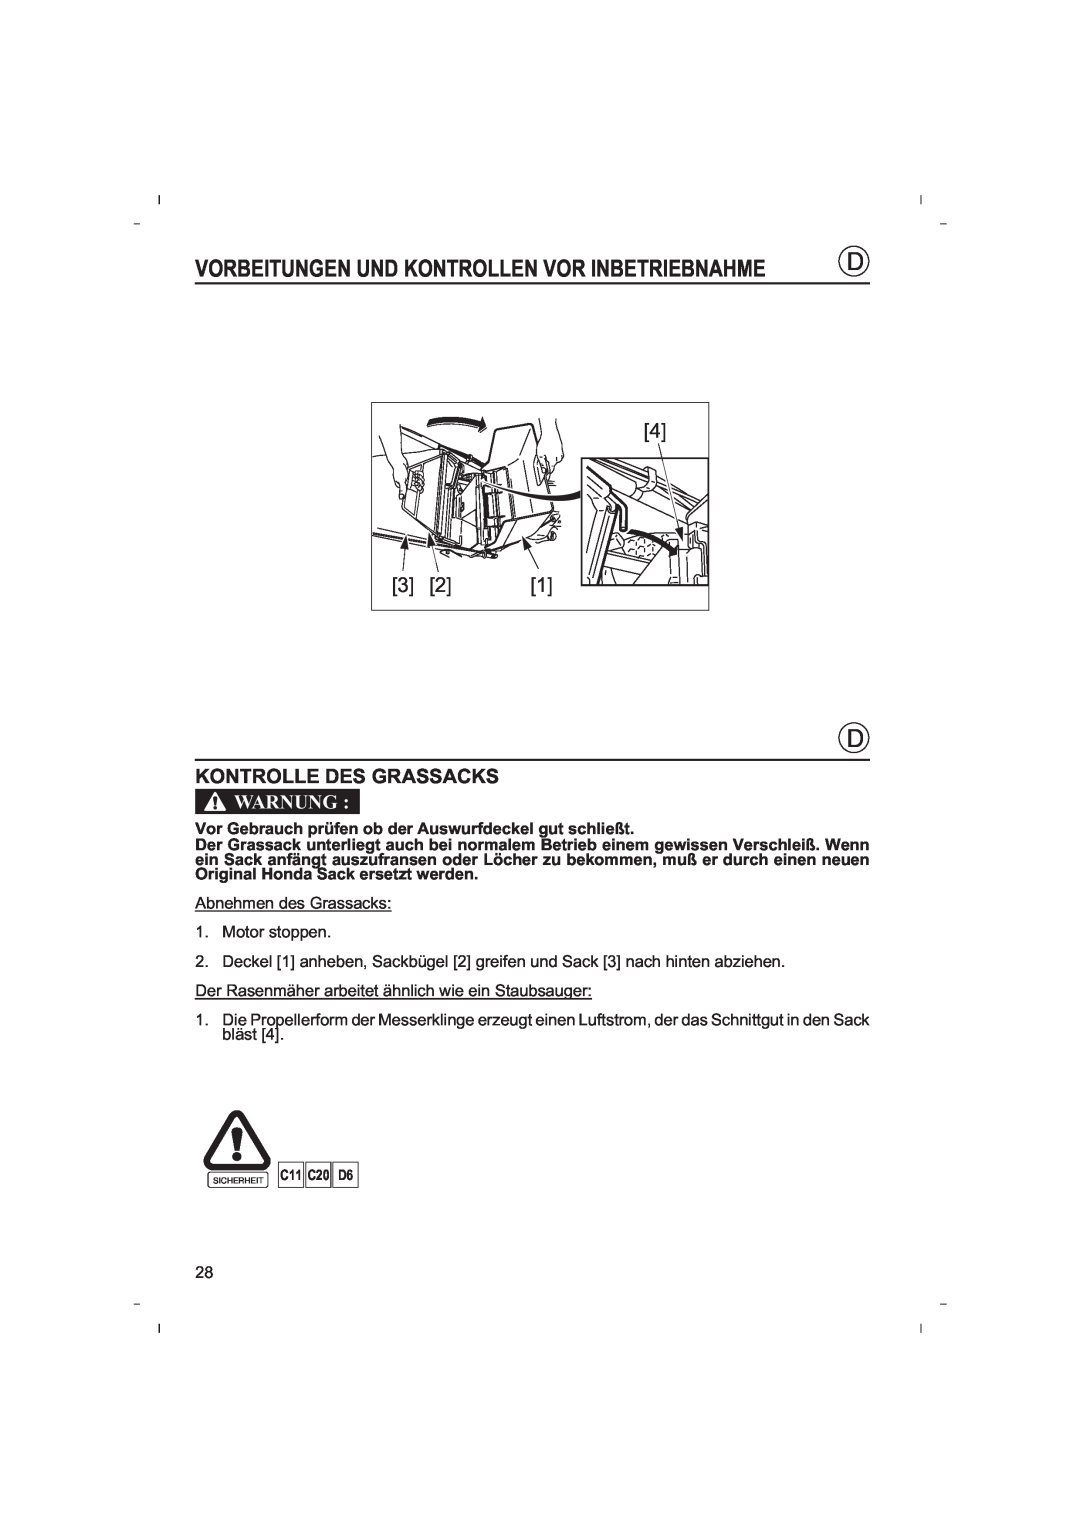 Honda Power Equipment HRB425C owner manual Kontrolle Des Grassacks, Vorbeitungen Und Kontrollen Vor Inbetriebnahme, Warnung 